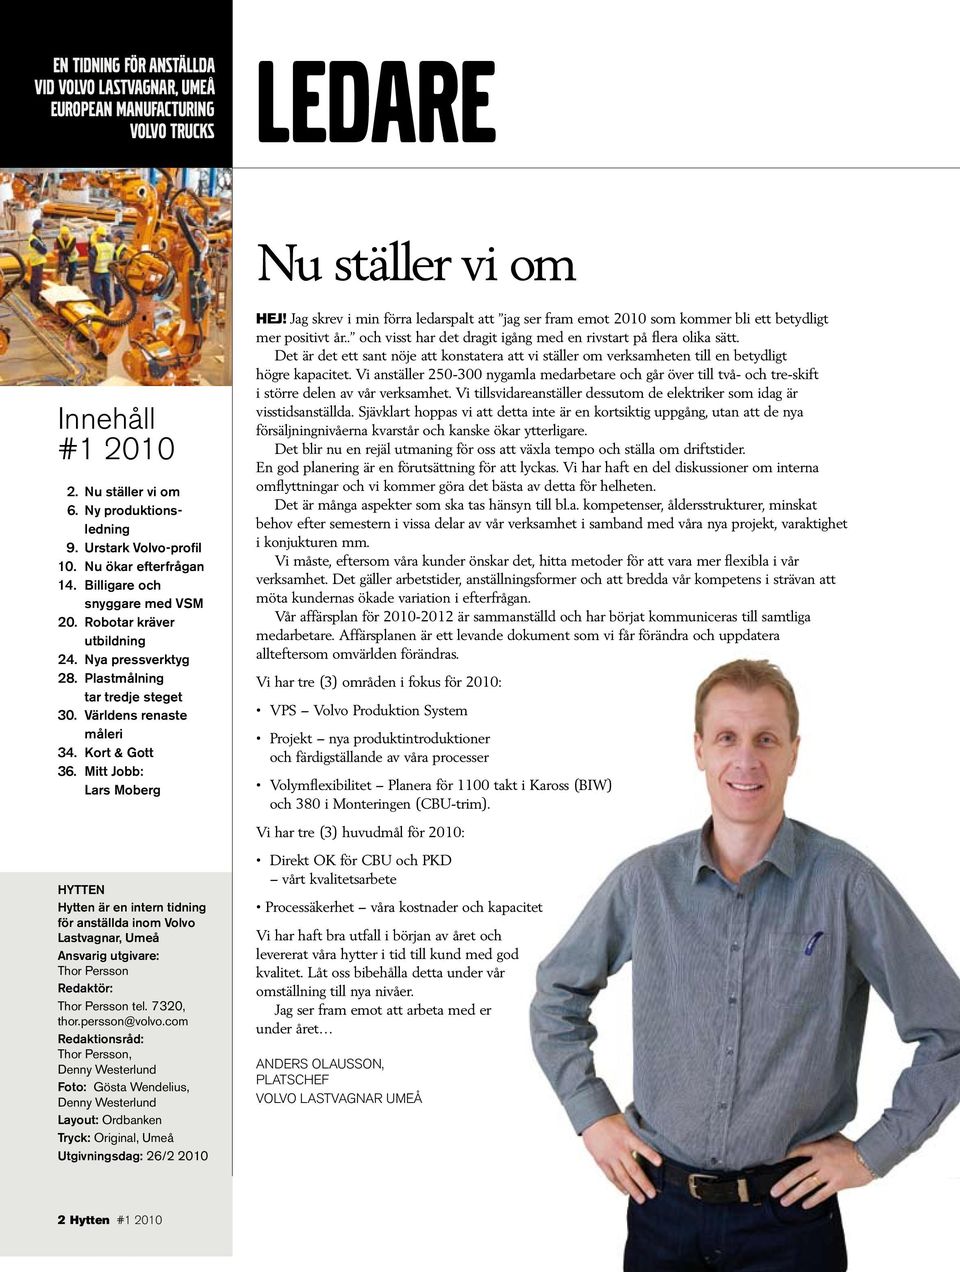 Mitt Jobb: Lars Moberg HYTTEN Hytten är en intern tidning för anställda inom Volvo Lastvagnar, Umeå Ansvarig utgivare: Thor Persson Redaktör: Thor Persson tel. 7320, thor.persson@volvo.